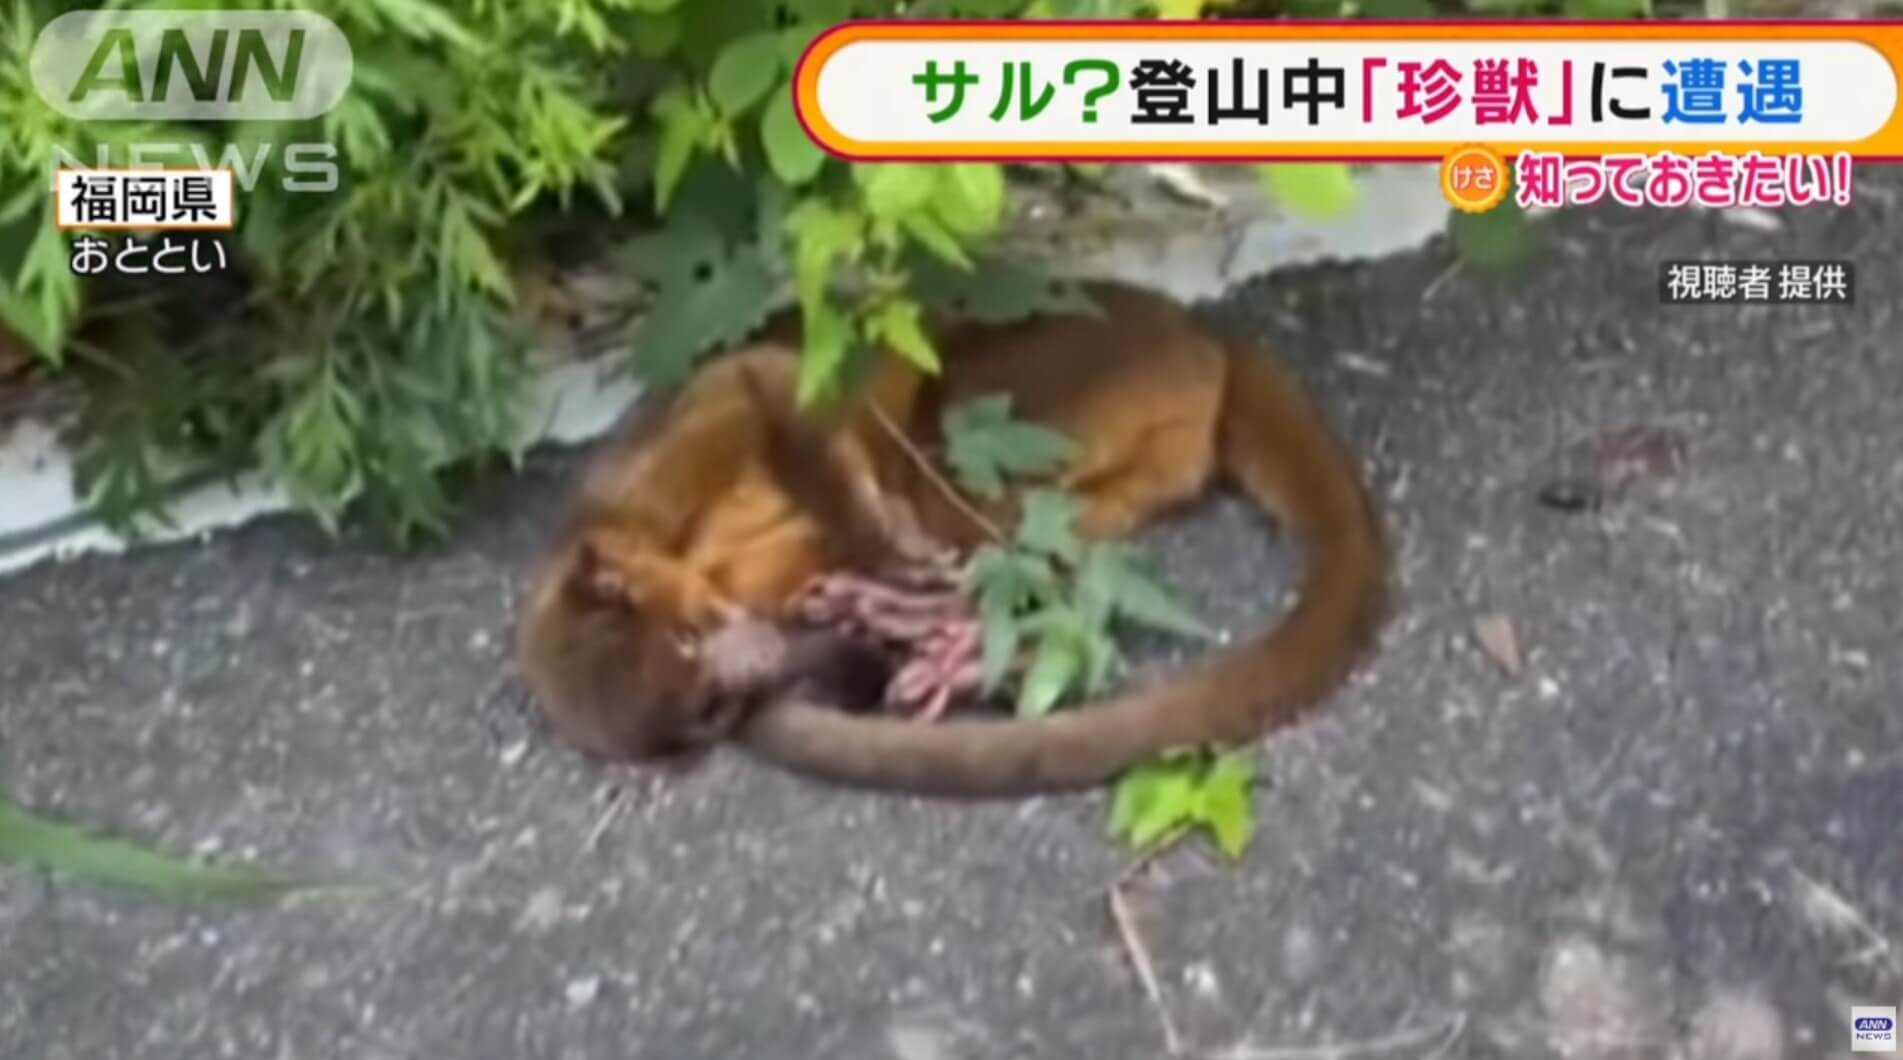 Animal raro do Brasil é encontrado no Japão